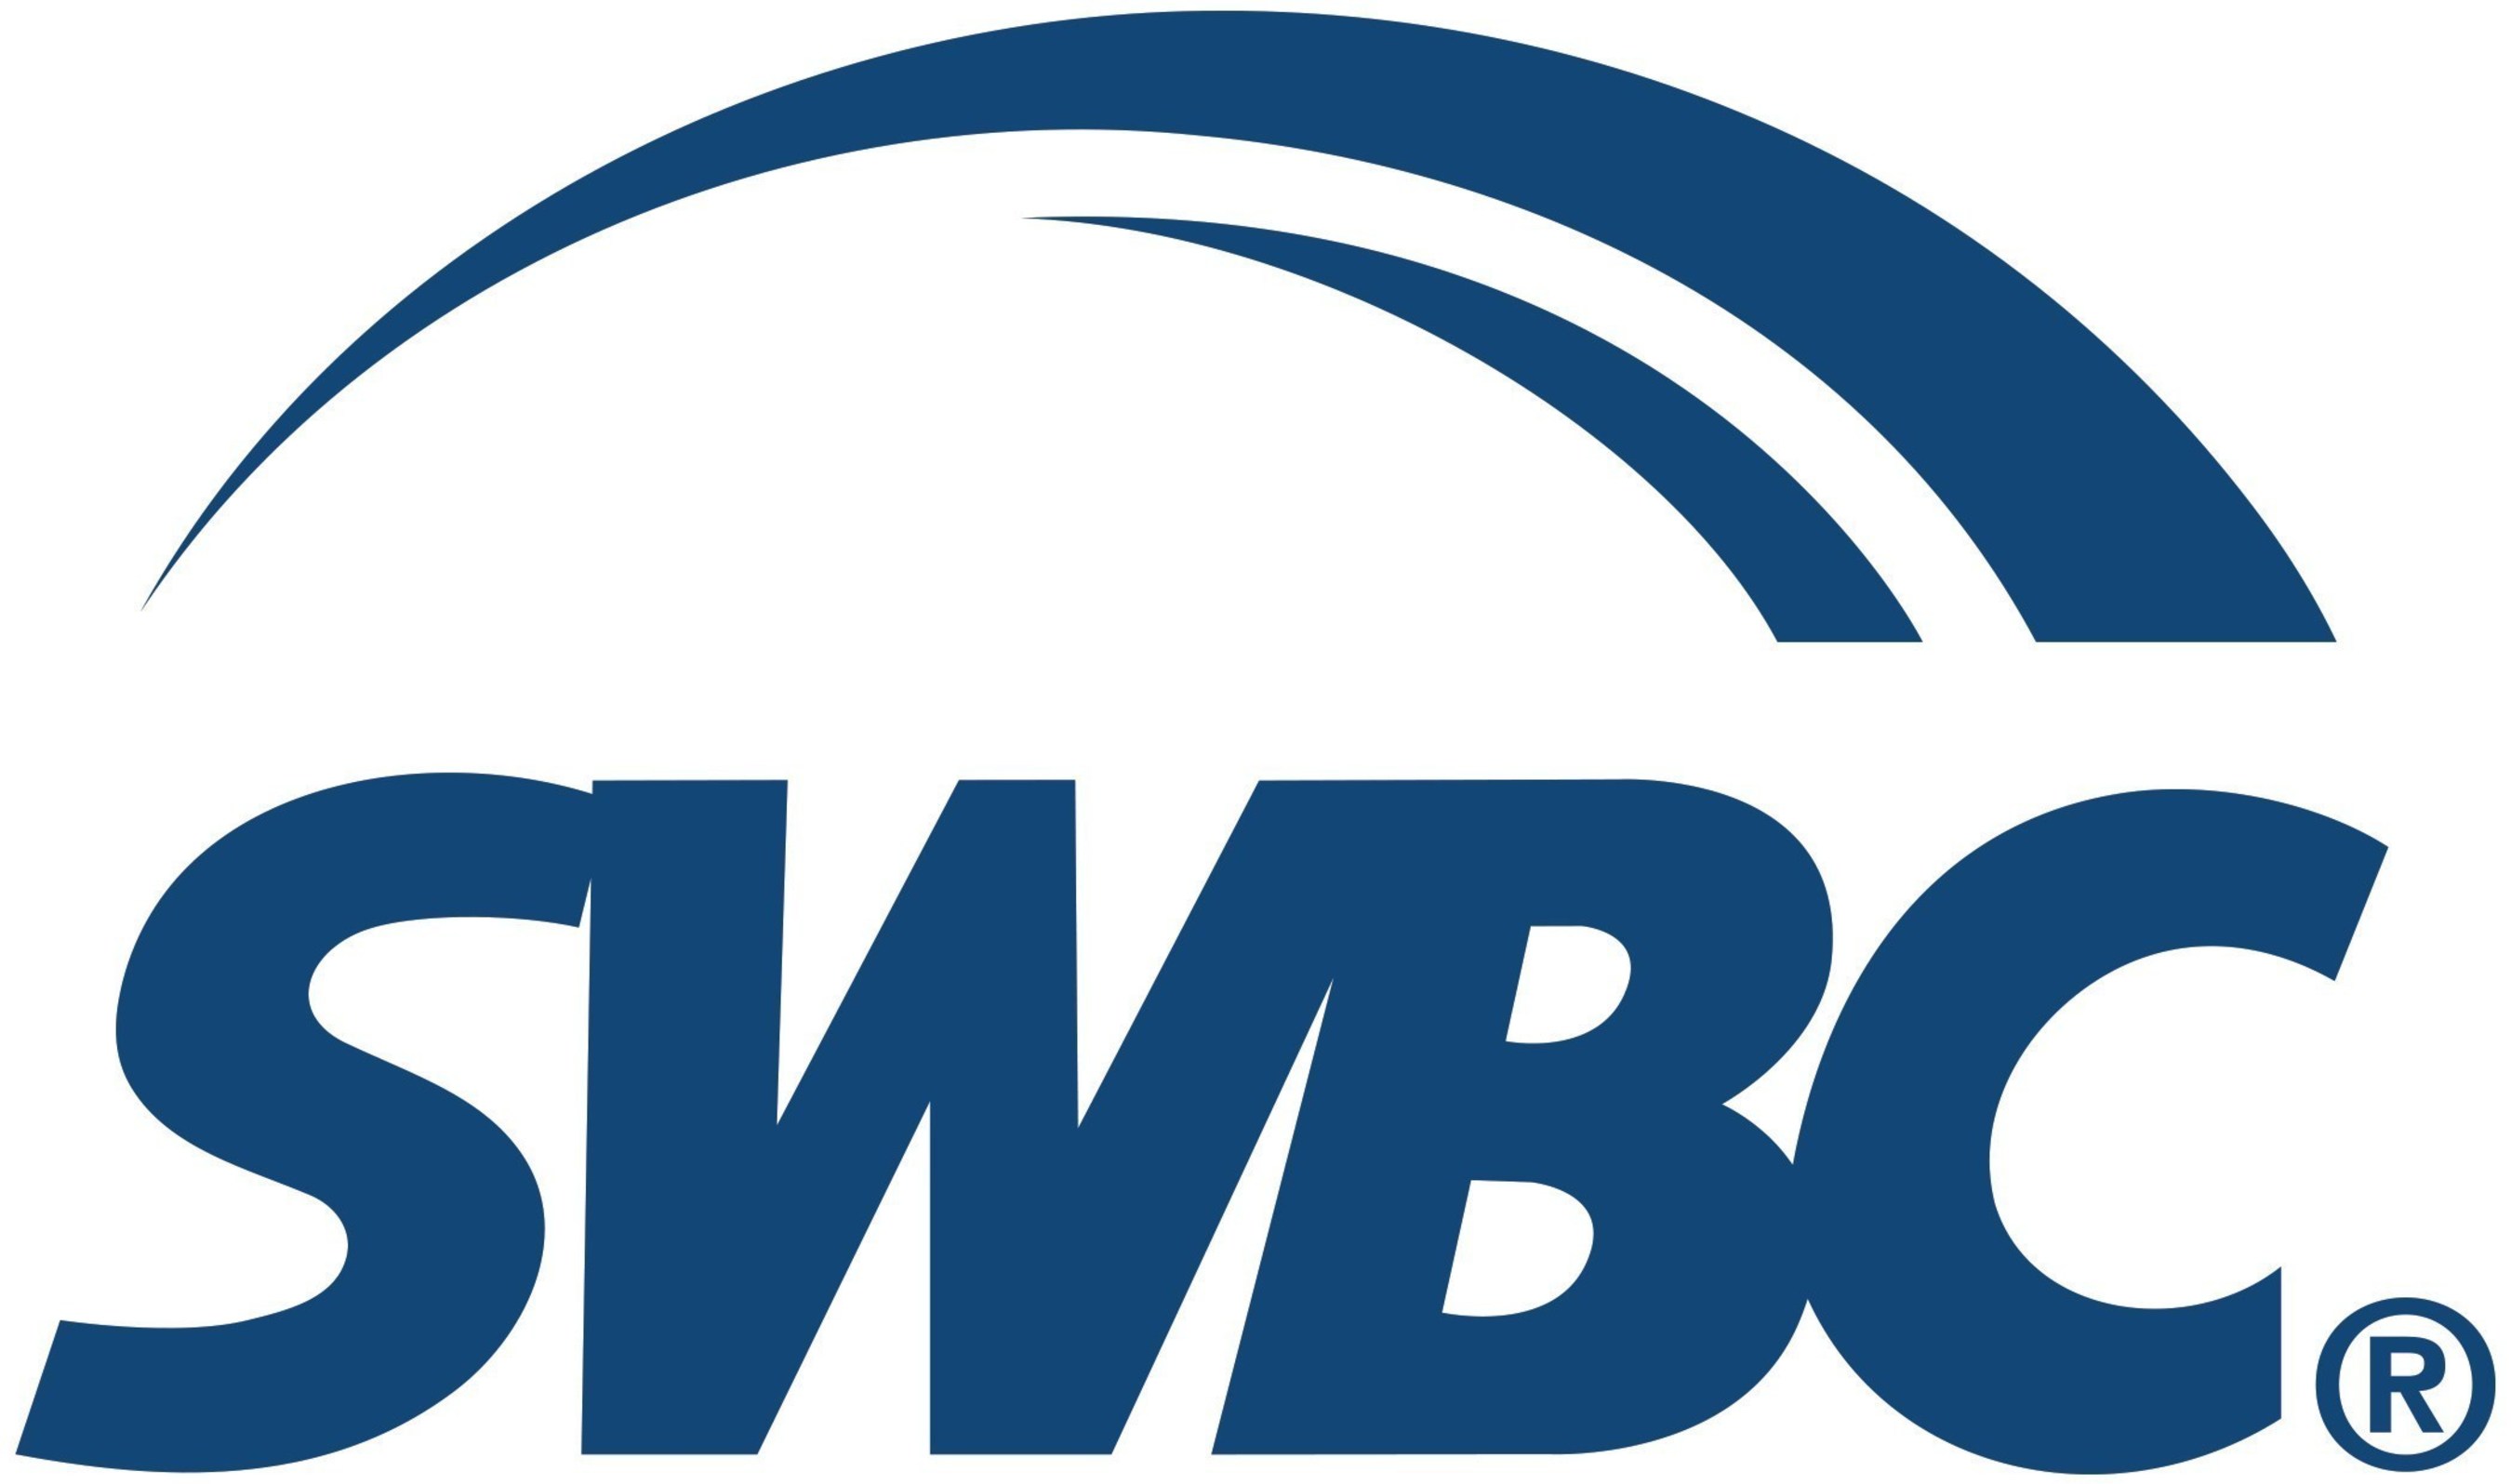 SWBC Logo (PRNewsFoto/SWBC)